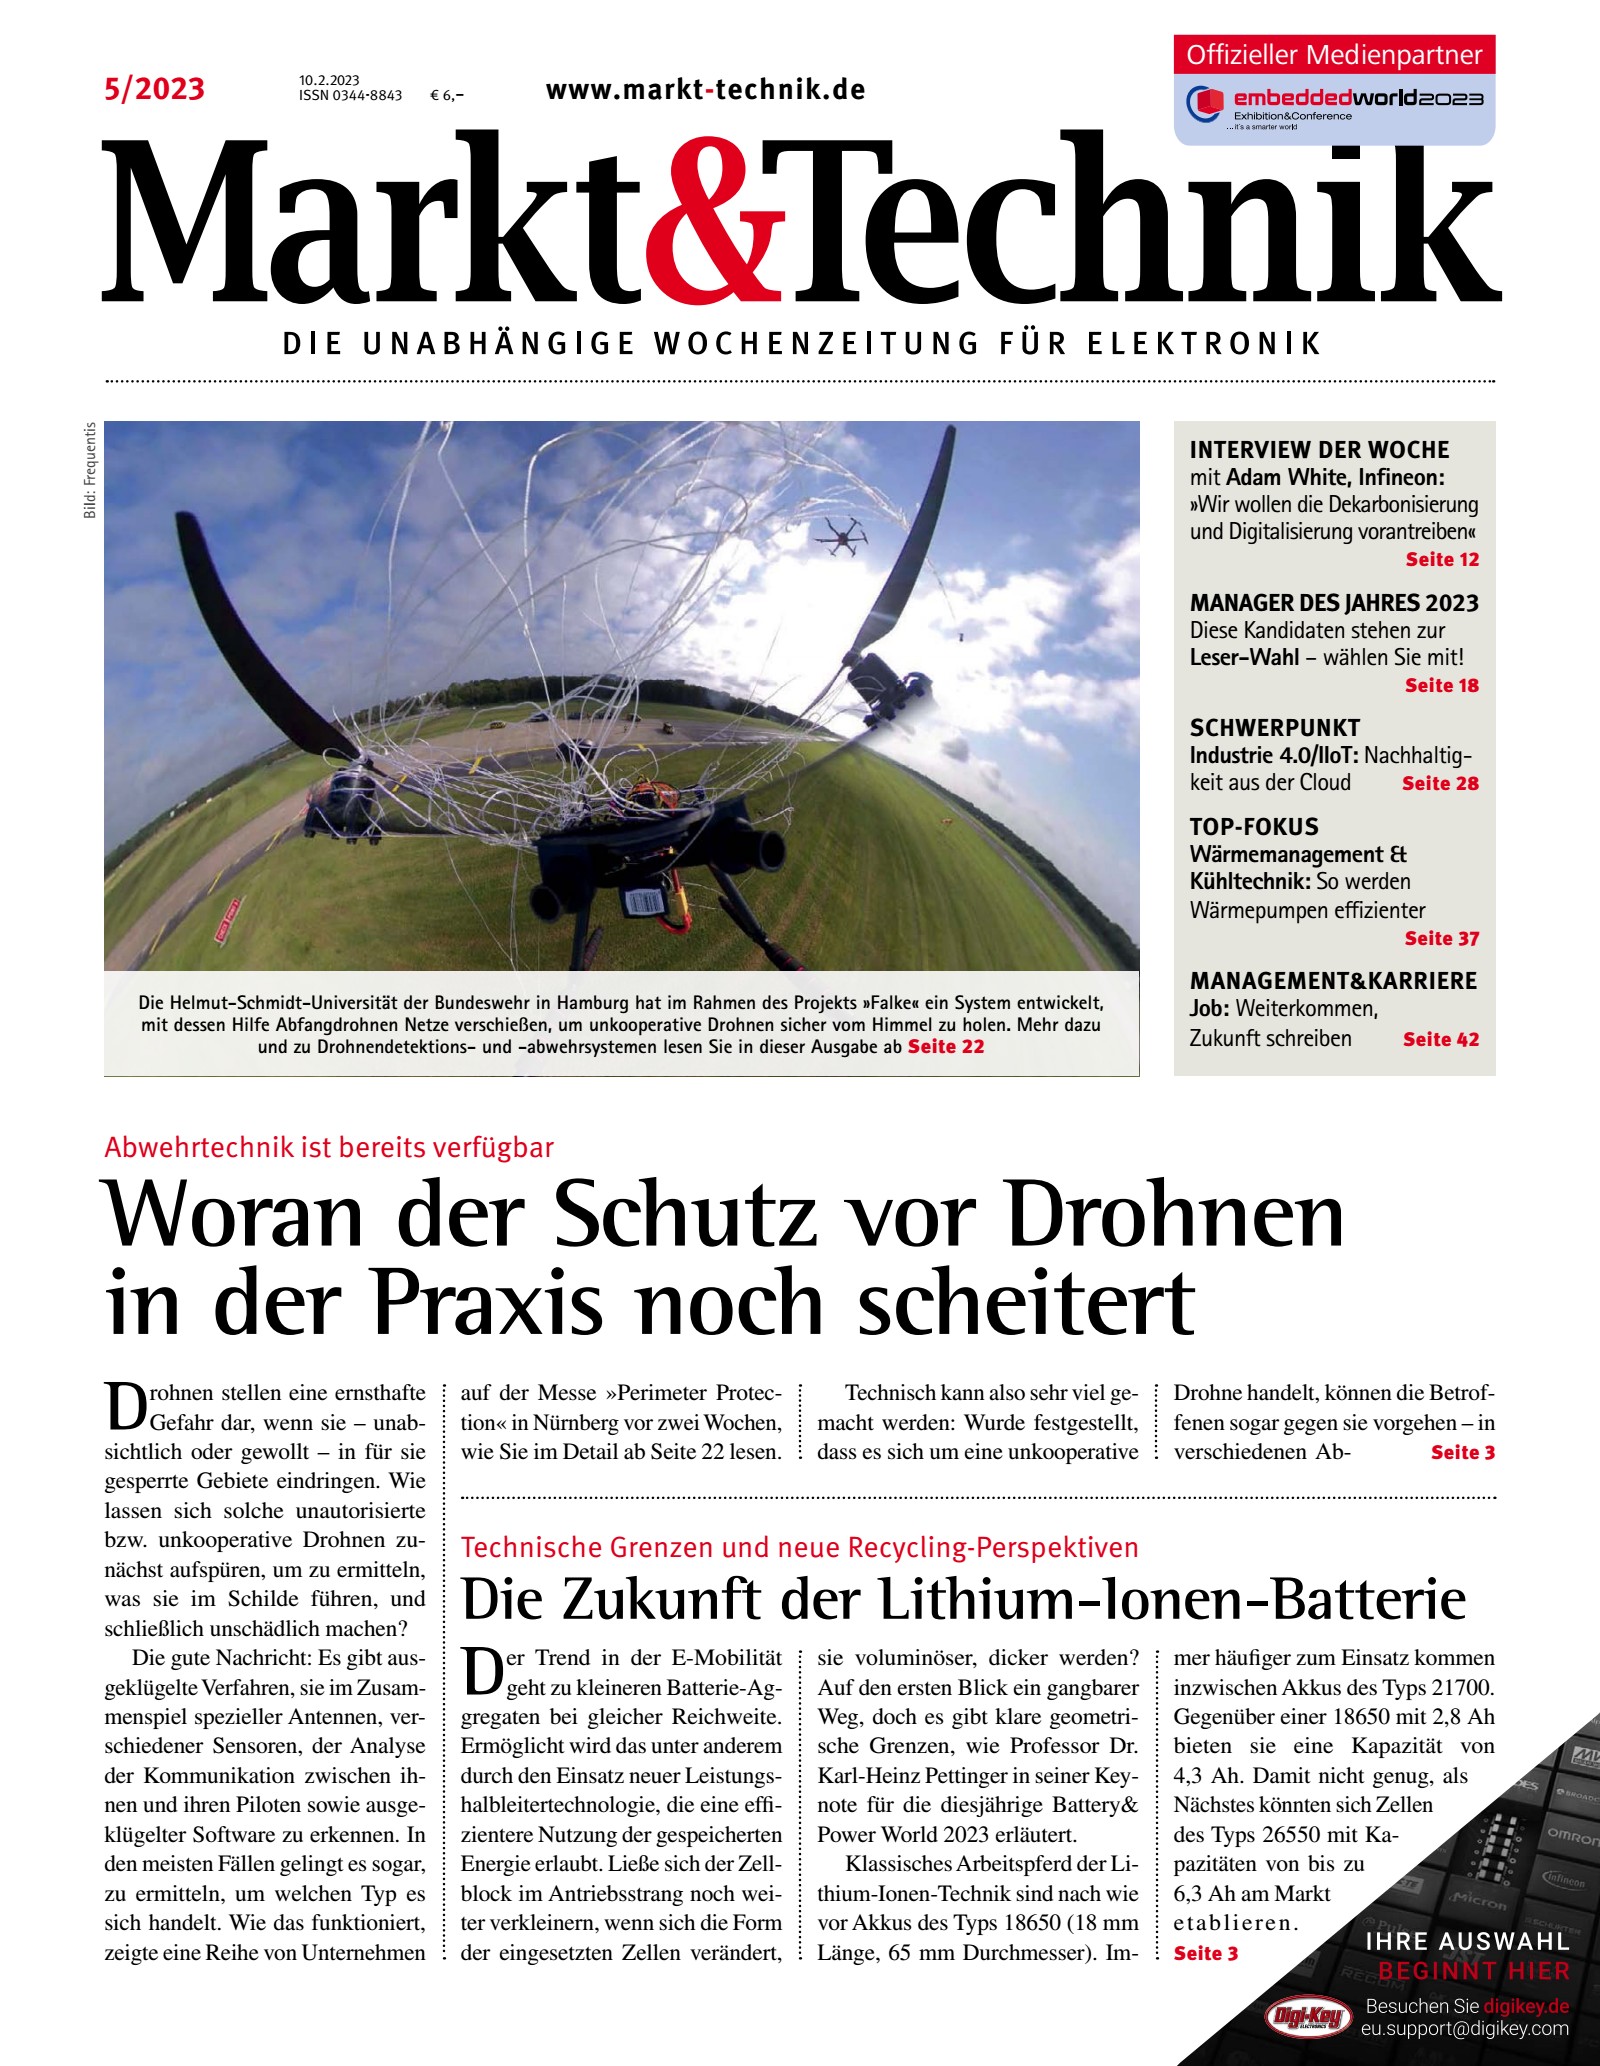 Markt&Technik 05/2023 Digital